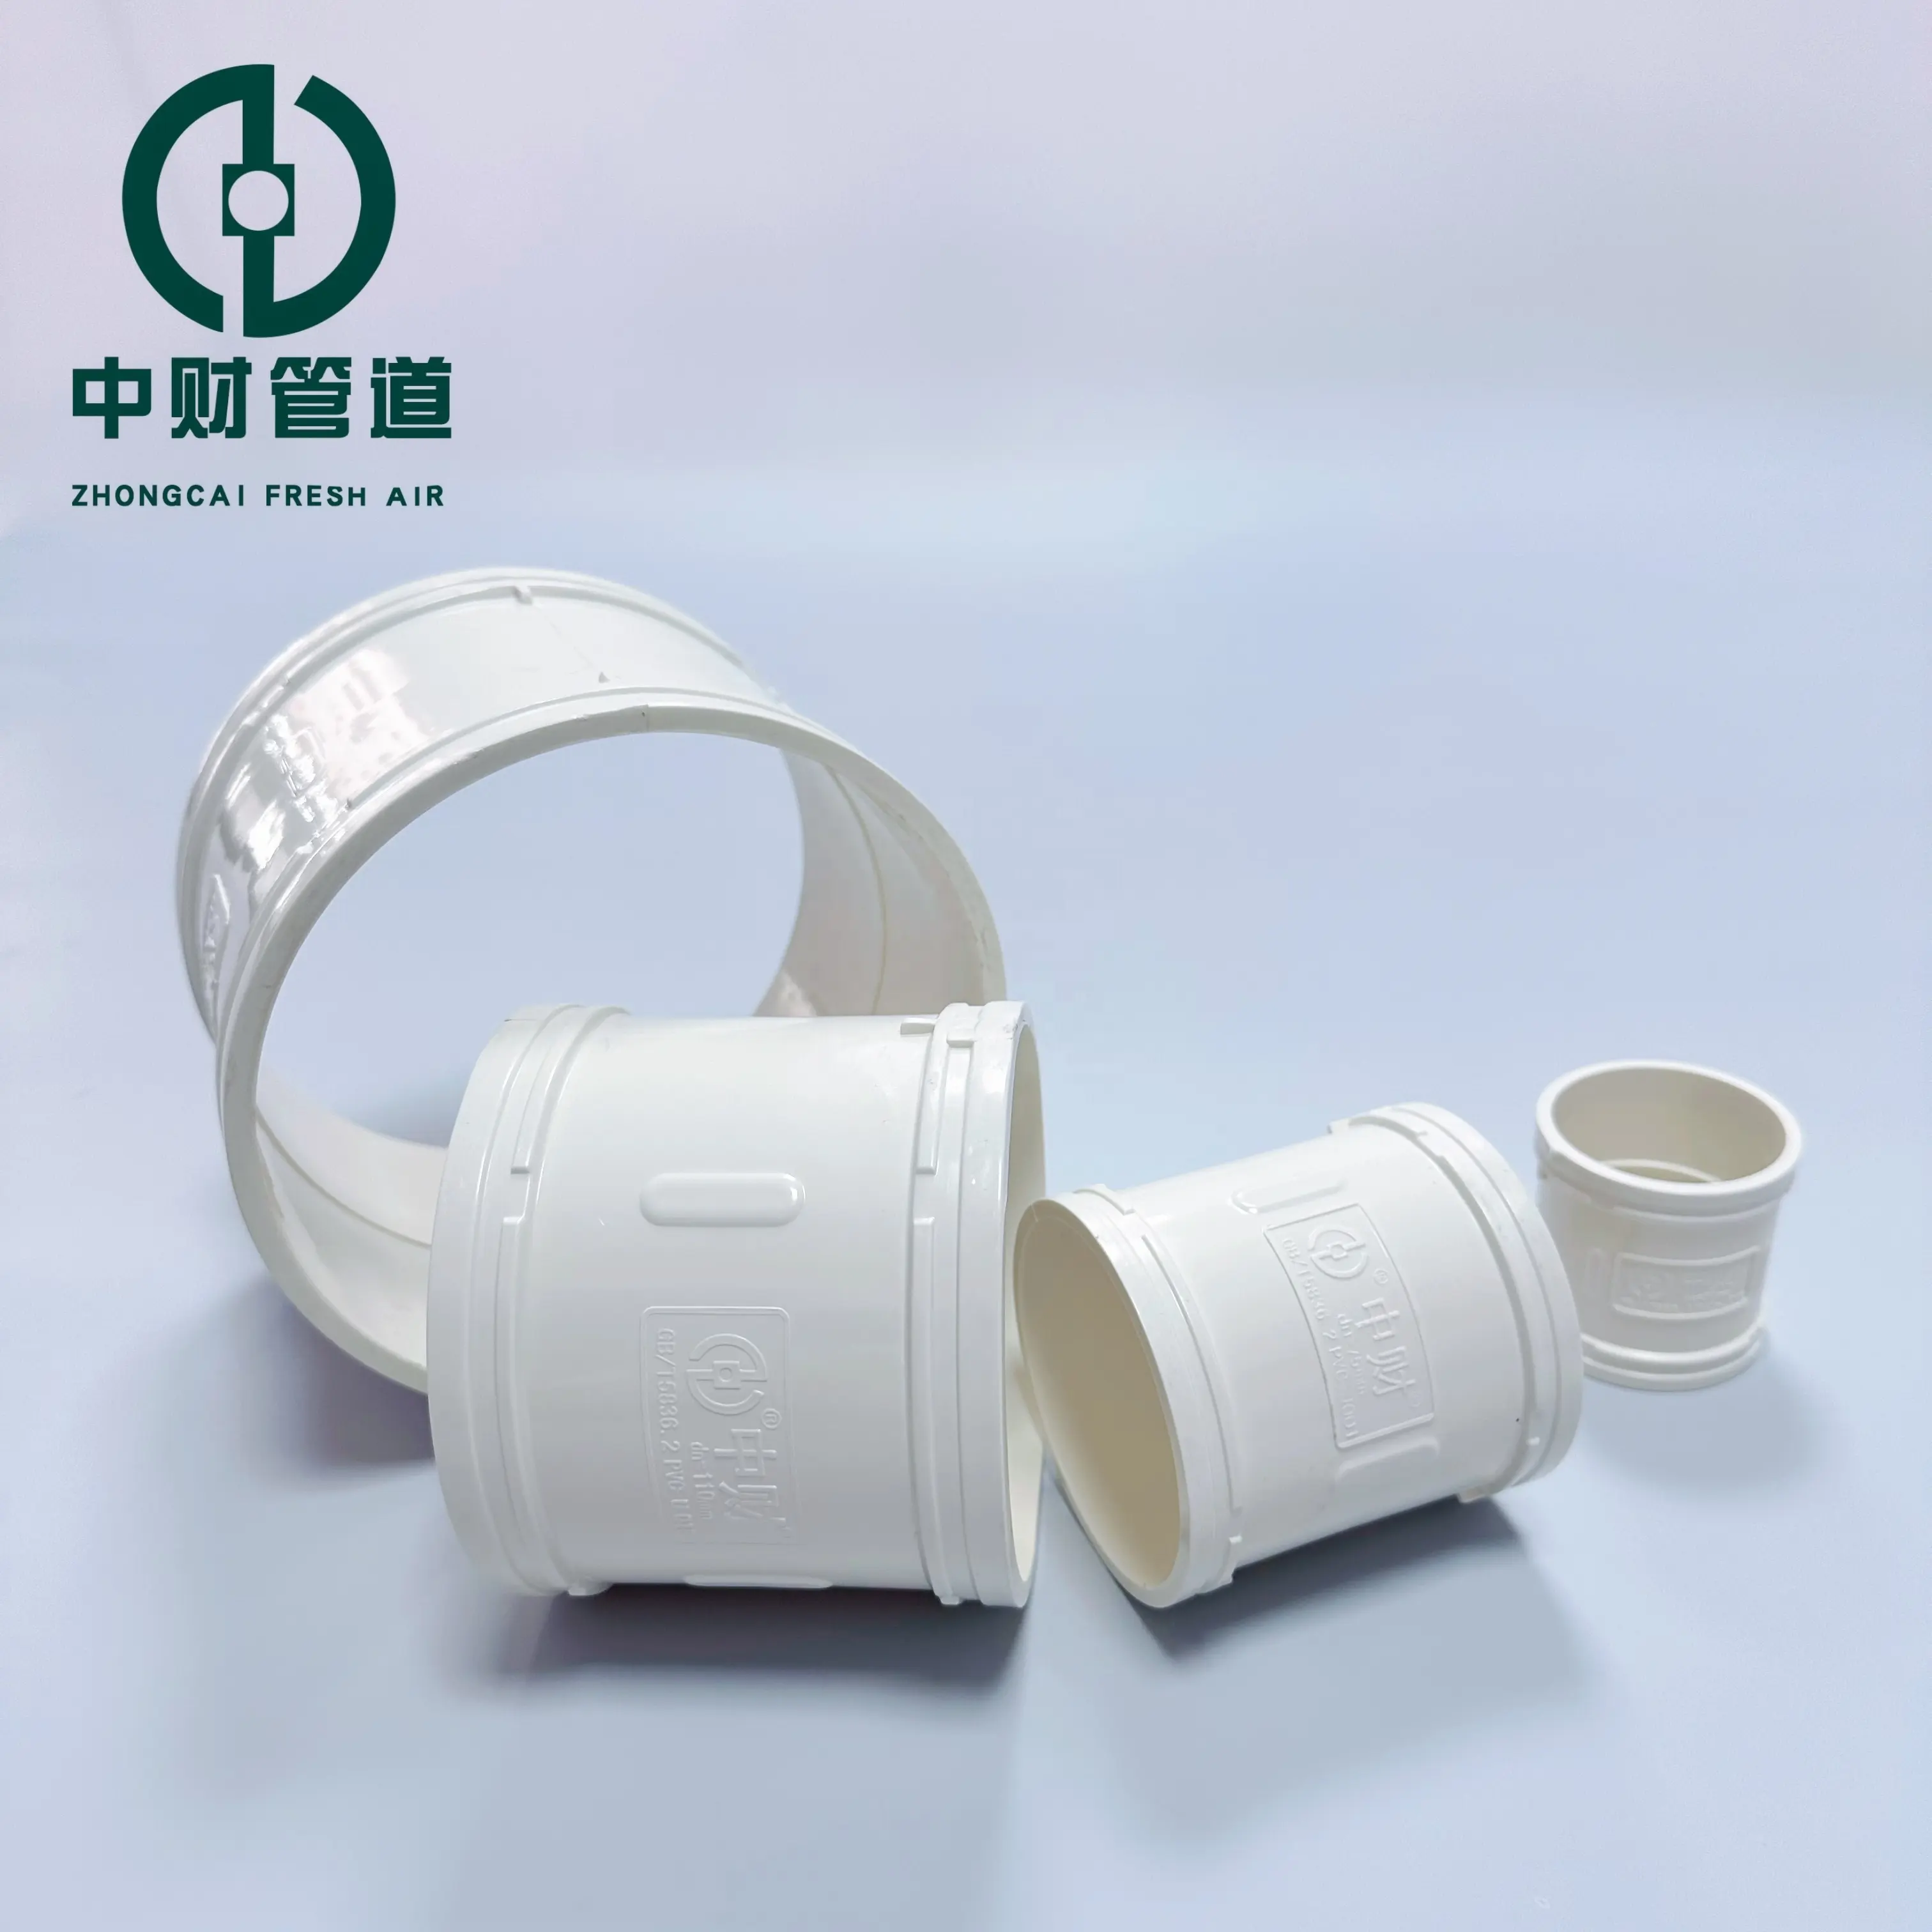 Accesorios de tubería de PVC Zhongcai, tubería de drenaje de PVC personalizada, conducto de alcantarillado directo, tubería de PVC barata, fábrica al por mayor, 50mm, 75mm, 110mm